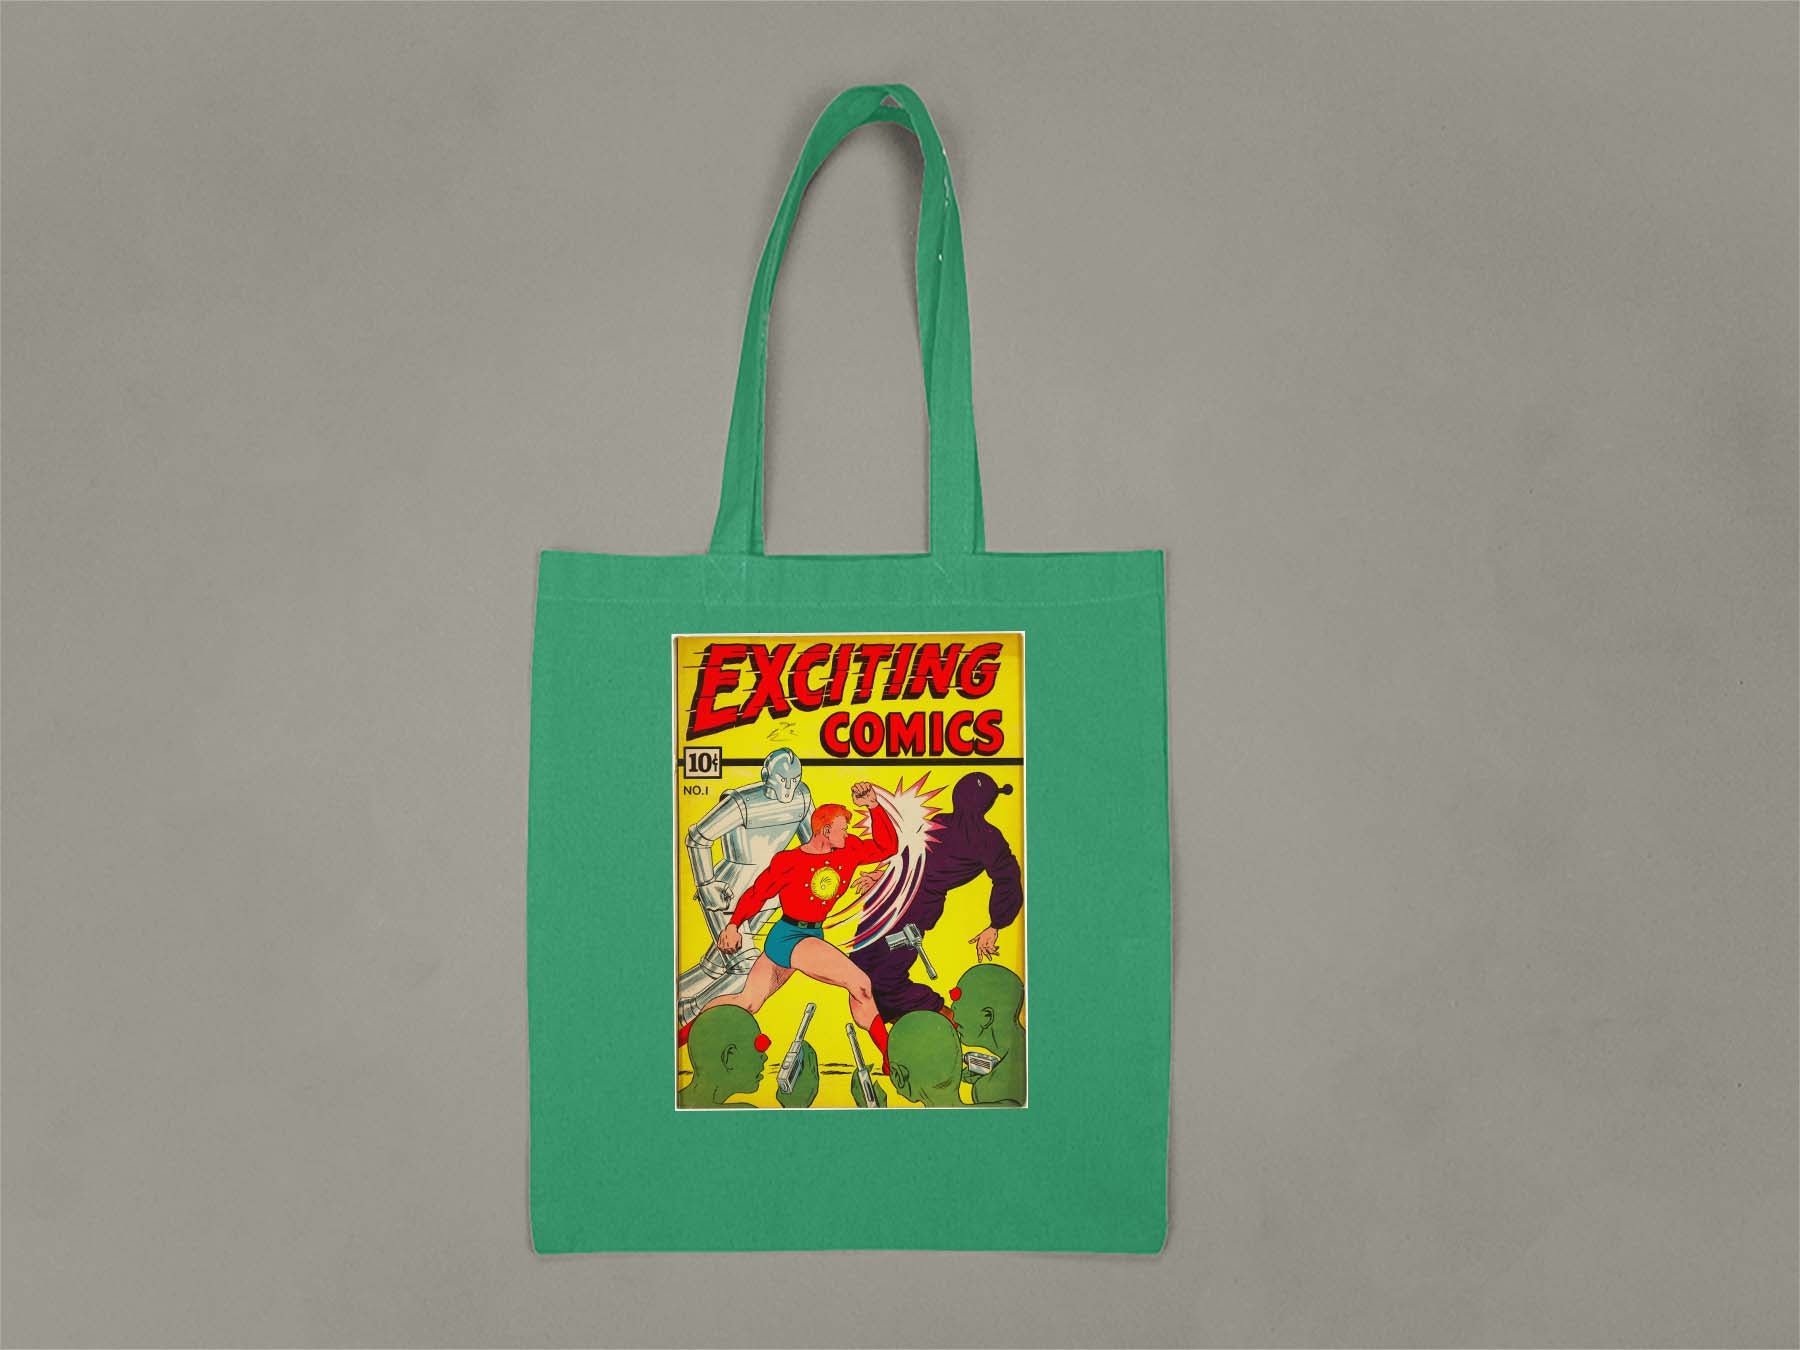 Exciting Comics No.1 Tote Bag  Kelly Green